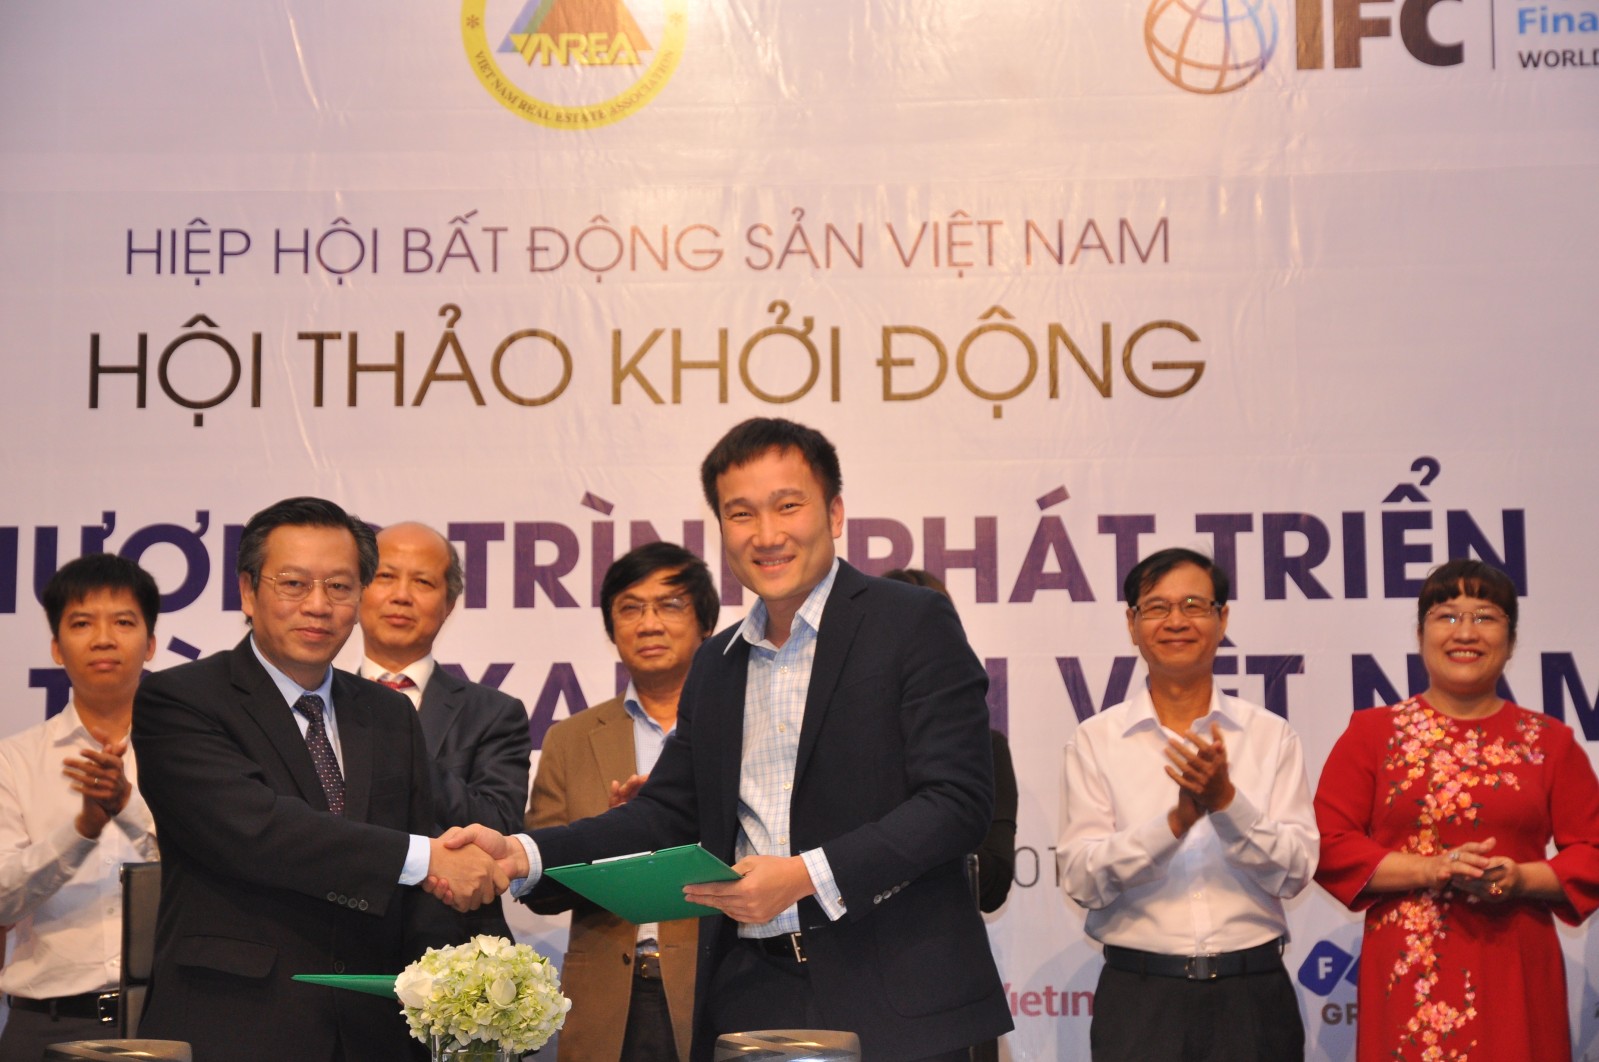 Đại diện Công ty quản lý quỹ VietinBank ký cam kết tài trợ ban đầu cho chương trình.